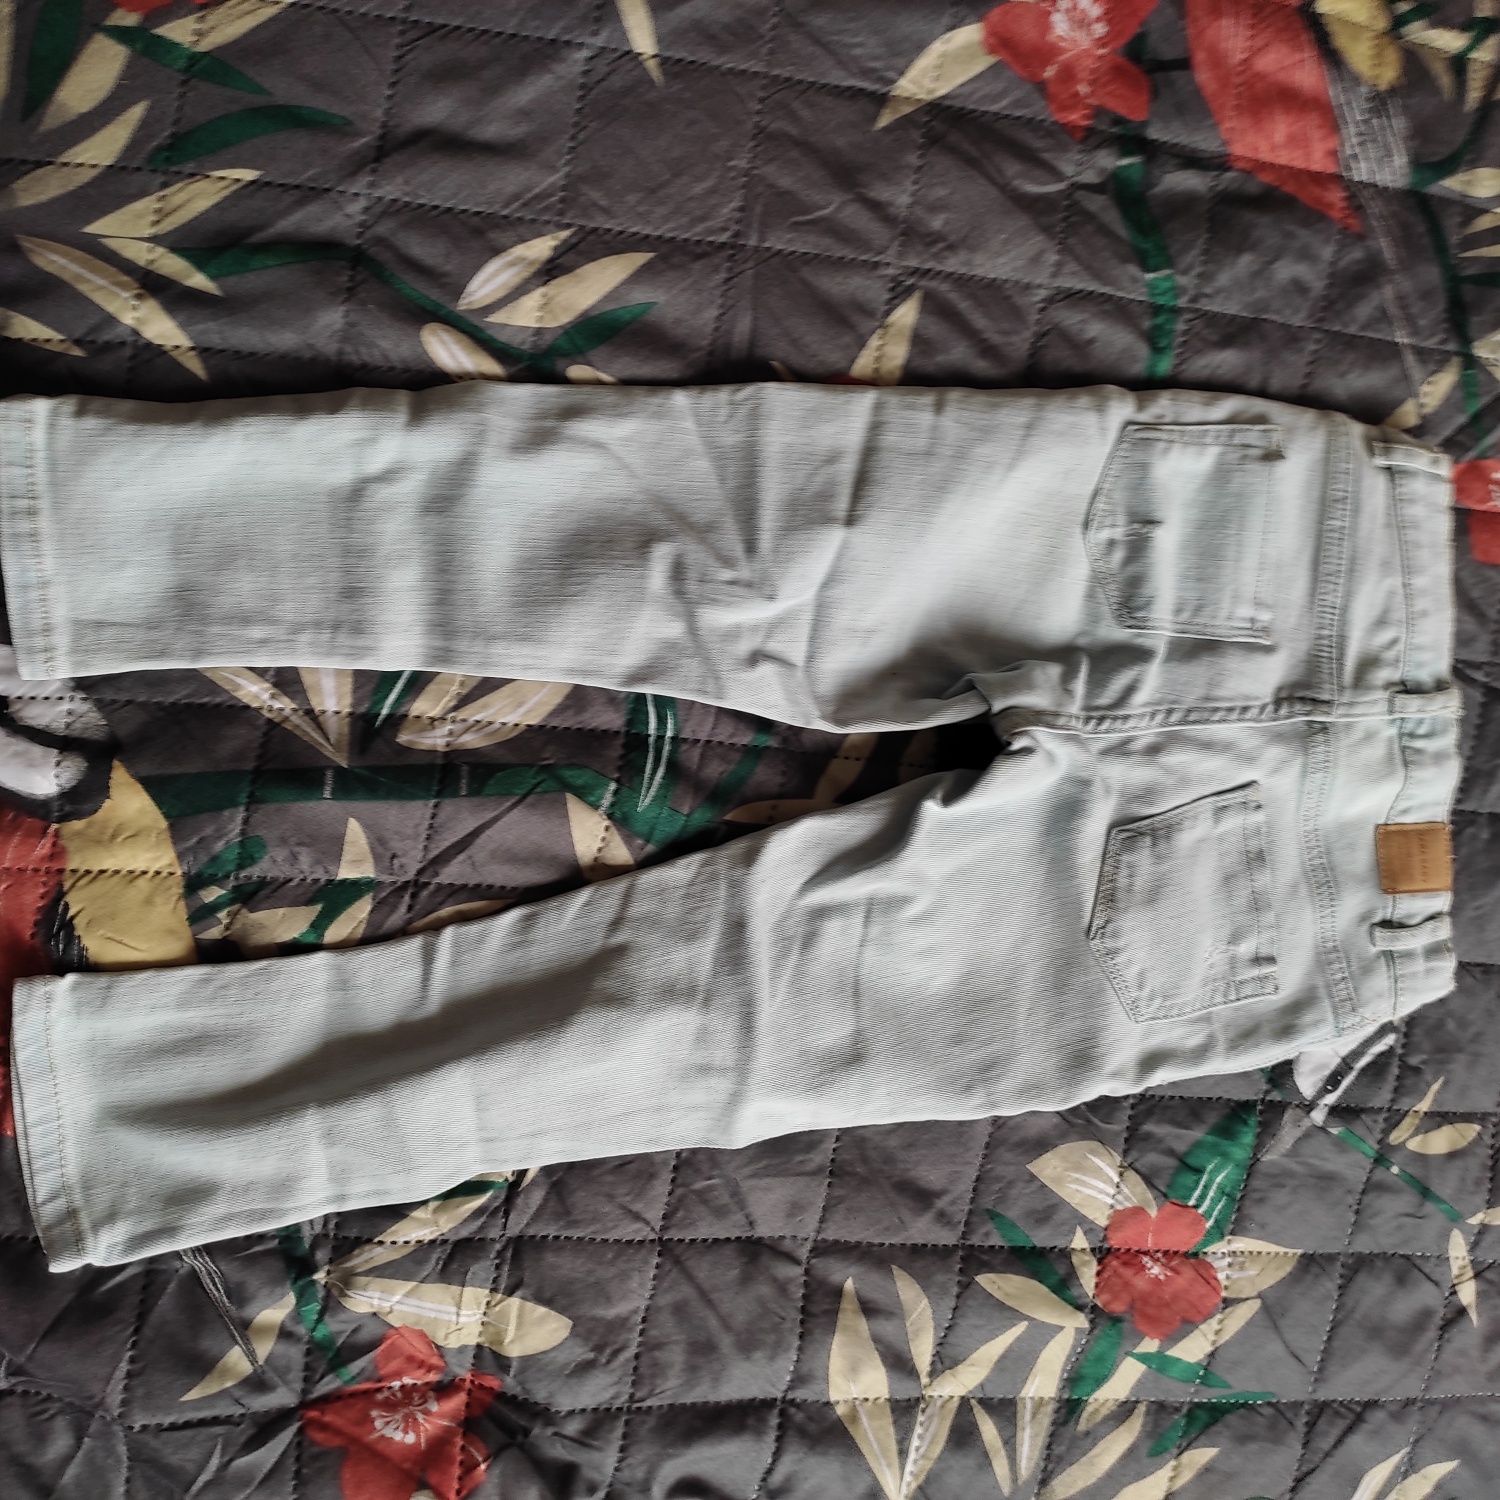 Spodnie jeansowe Zara 104